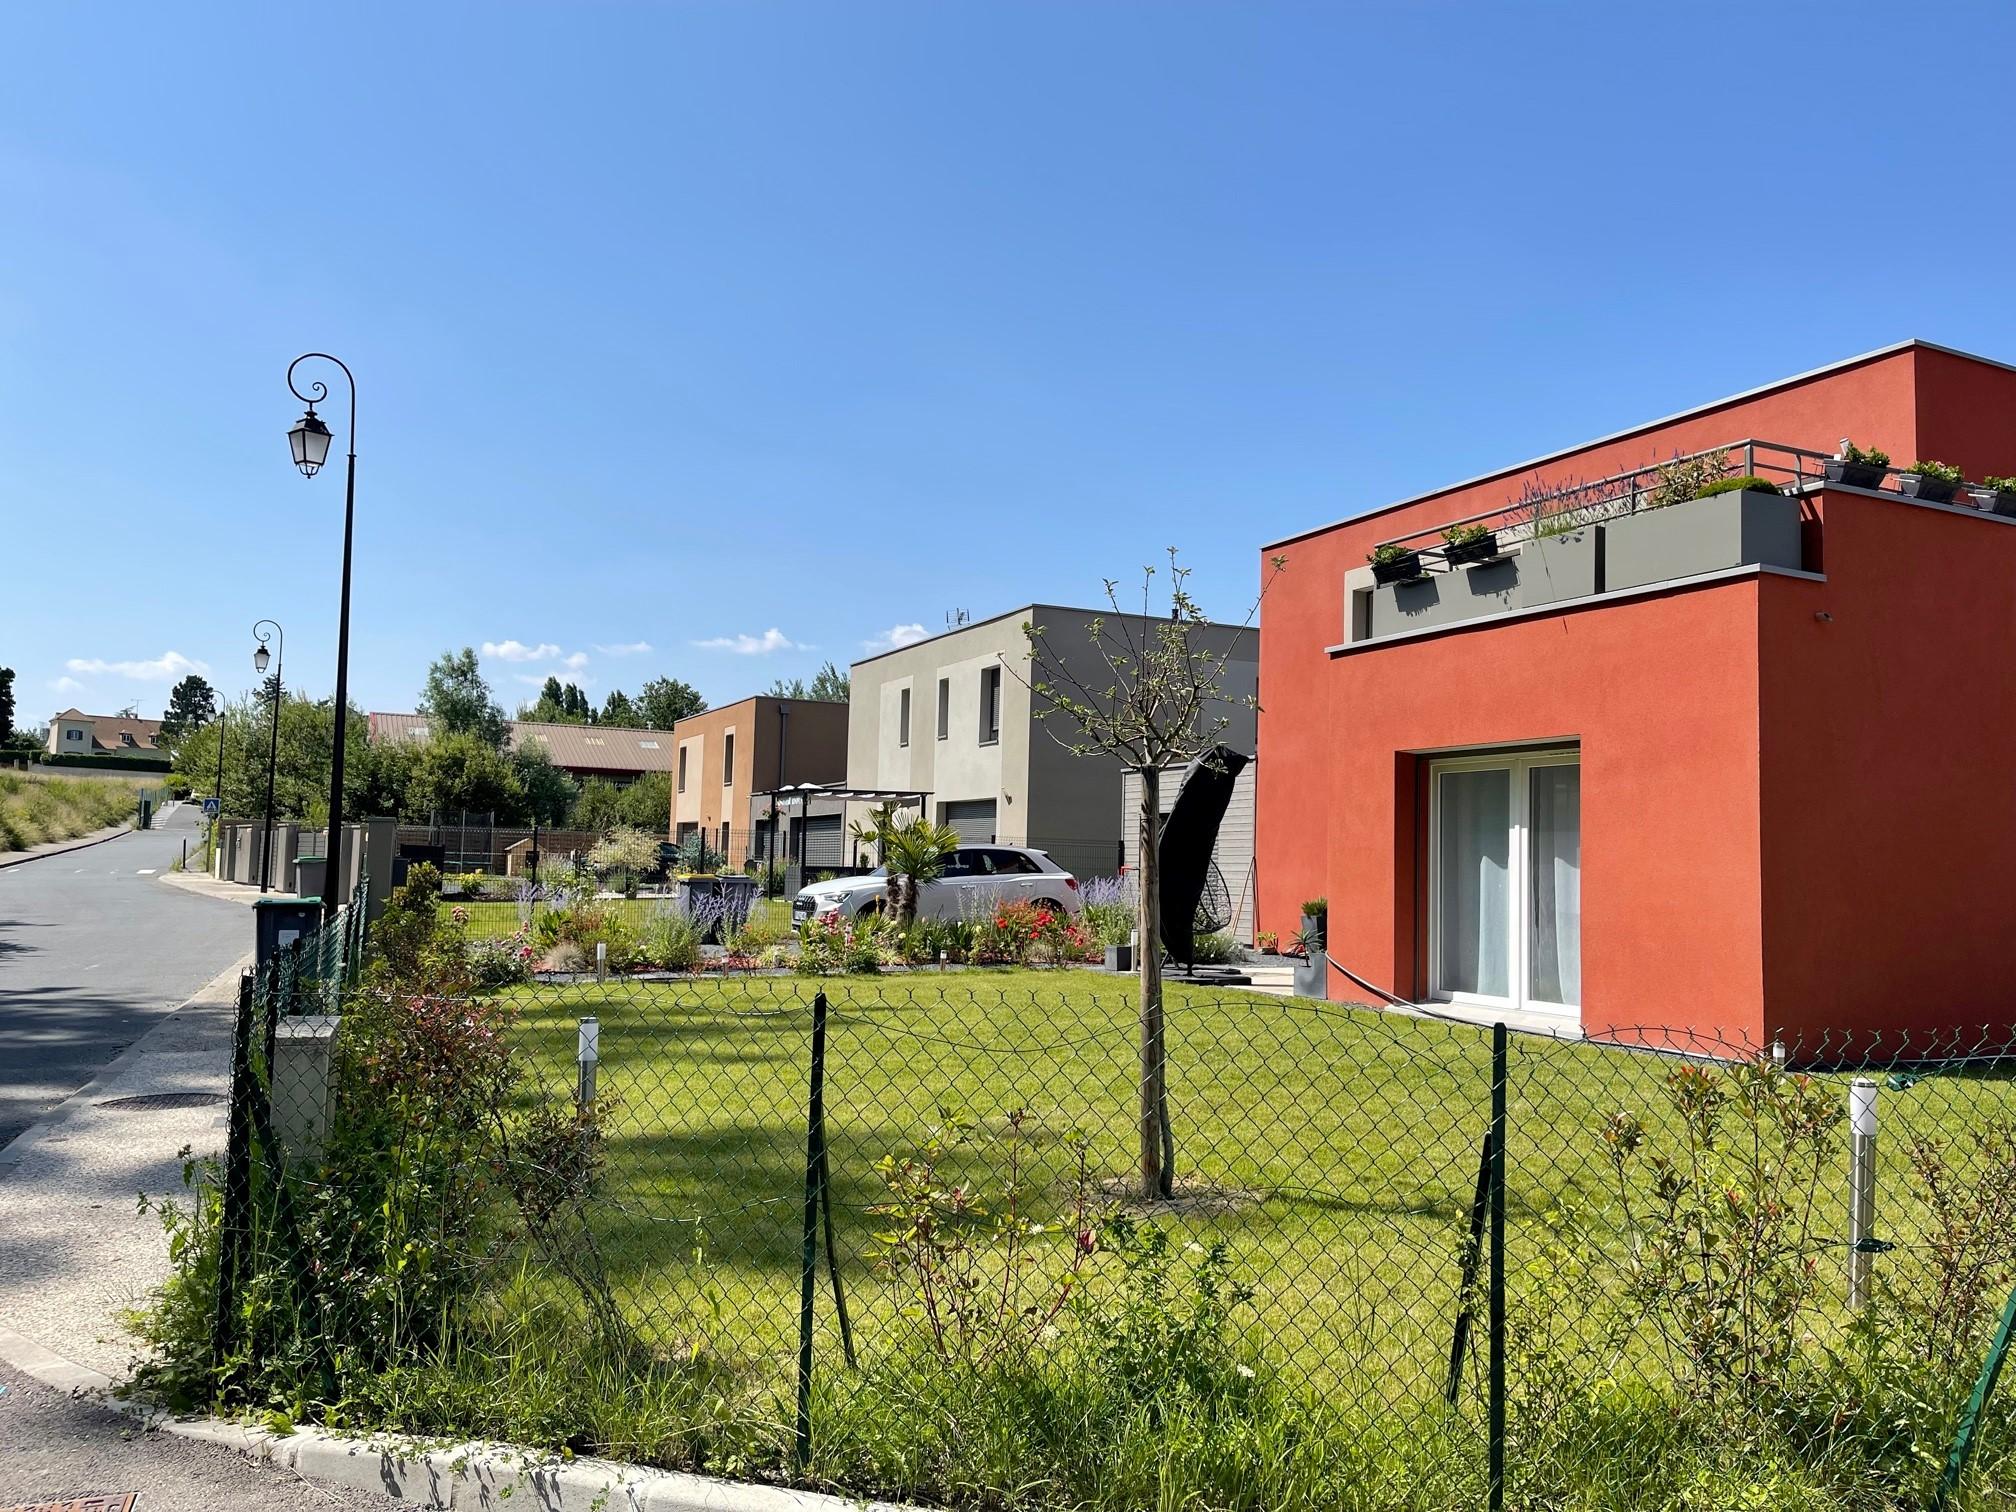 La Petite Halle : livraison des maisons à énergie passive dans l'écoquartier de Luzarches